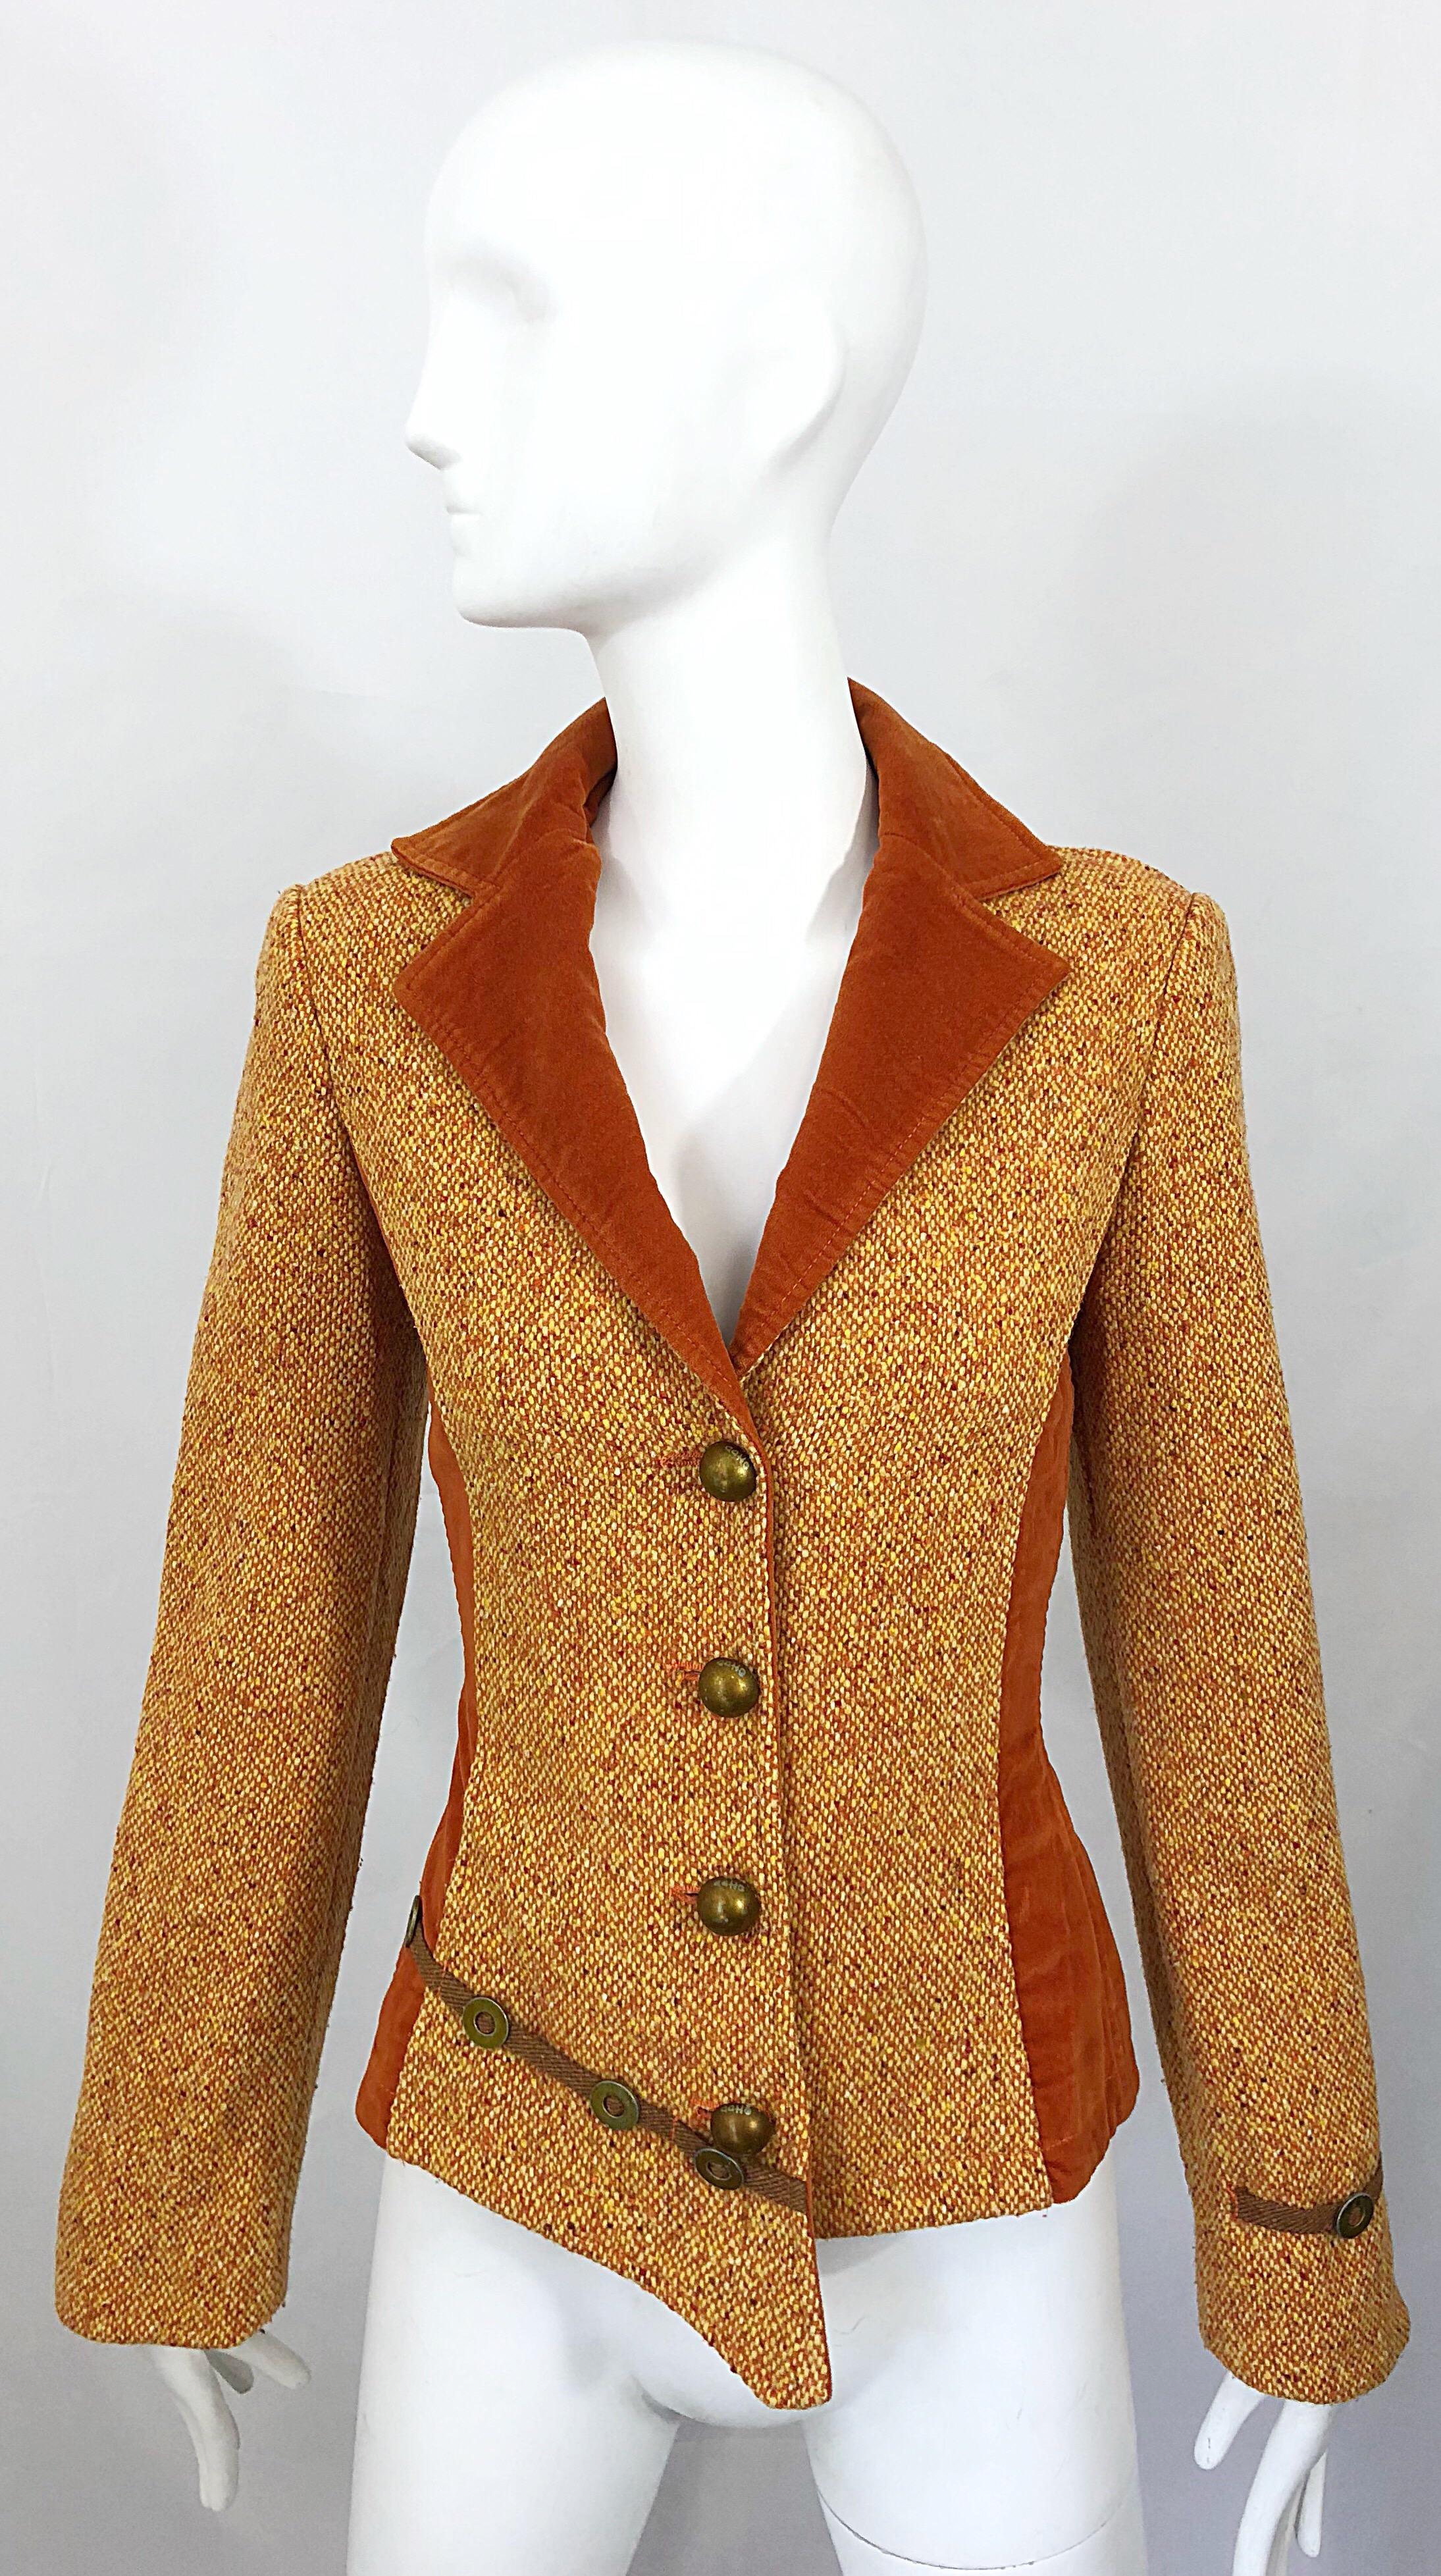 Seltene und stilvolle späte 1990er Jahre Vintage OHDD Italienisch gemacht Avant Garde asymmetrische Blazer Jacke! Mit Akzenten aus gebranntem orangefarbenem Samt und weicher Schurwolle in den Farben Marigold und Orange. Asymmetrischer Saum mit